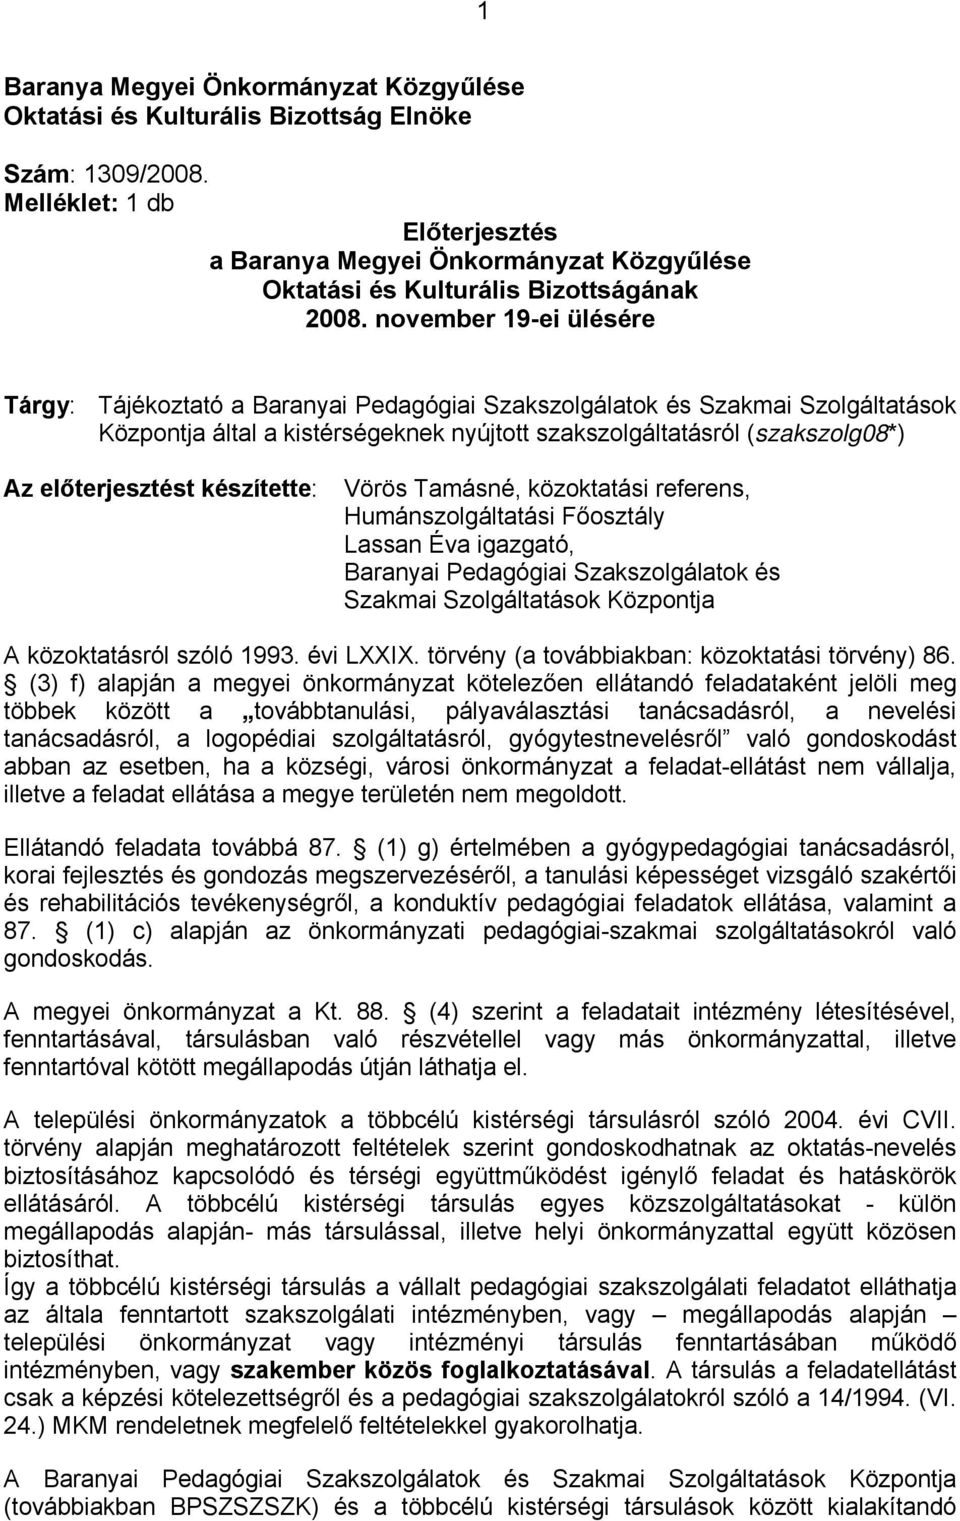 november 19-ei ülésére Tárgy: Tájékoztató a Baranyai Pedagógiai Szakszolgálatok és Szakmai Szolgáltatások Központja által a kistérségeknek nyújtott szakszolgáltatásról (szakszolg08*) Az